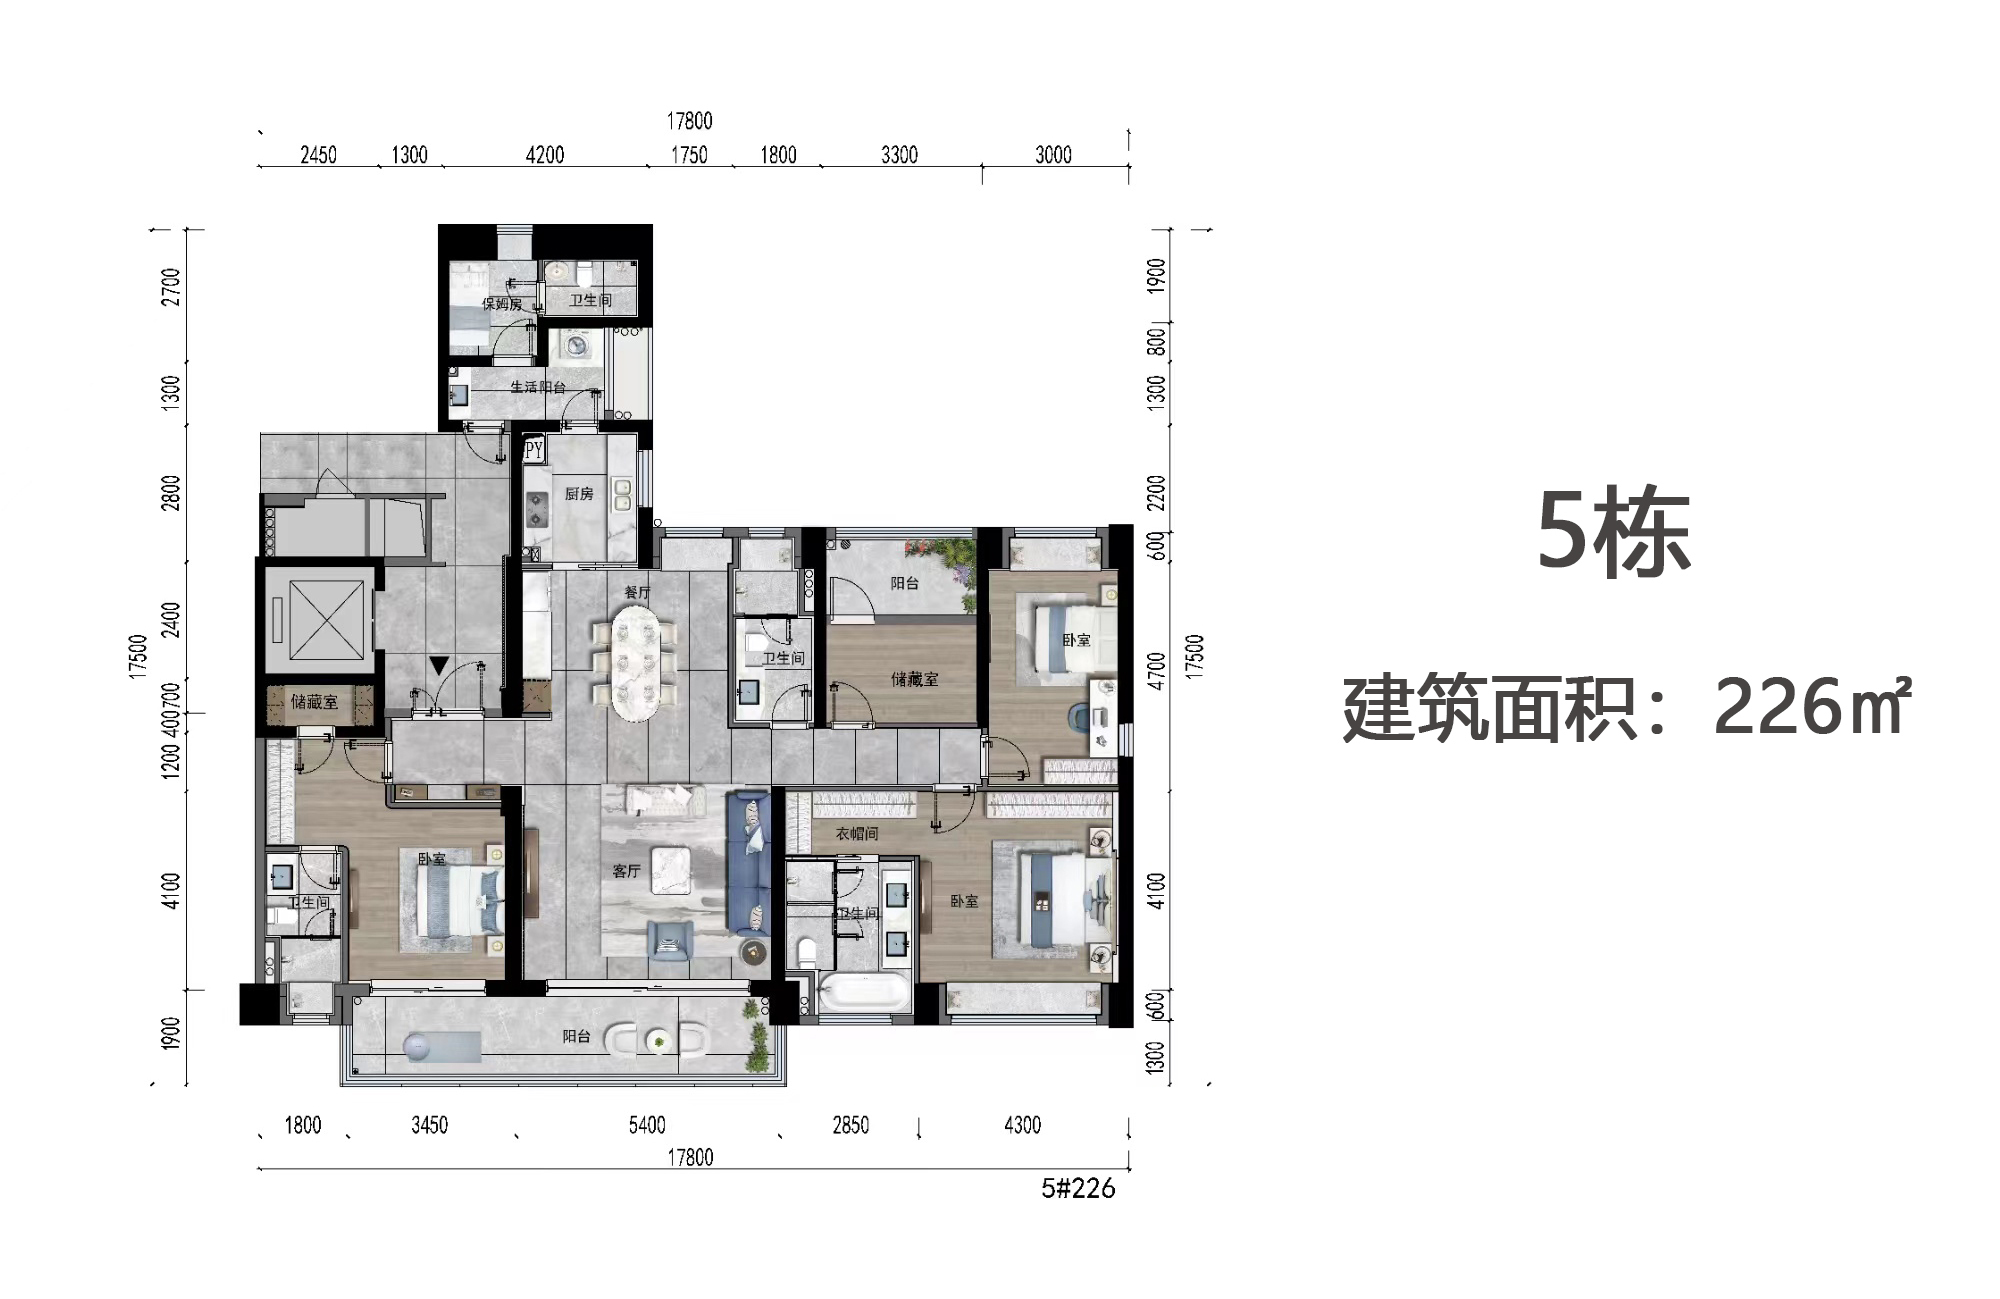 高层 5栋户型 5房2厅3卫+保姆房 建筑面积226㎡